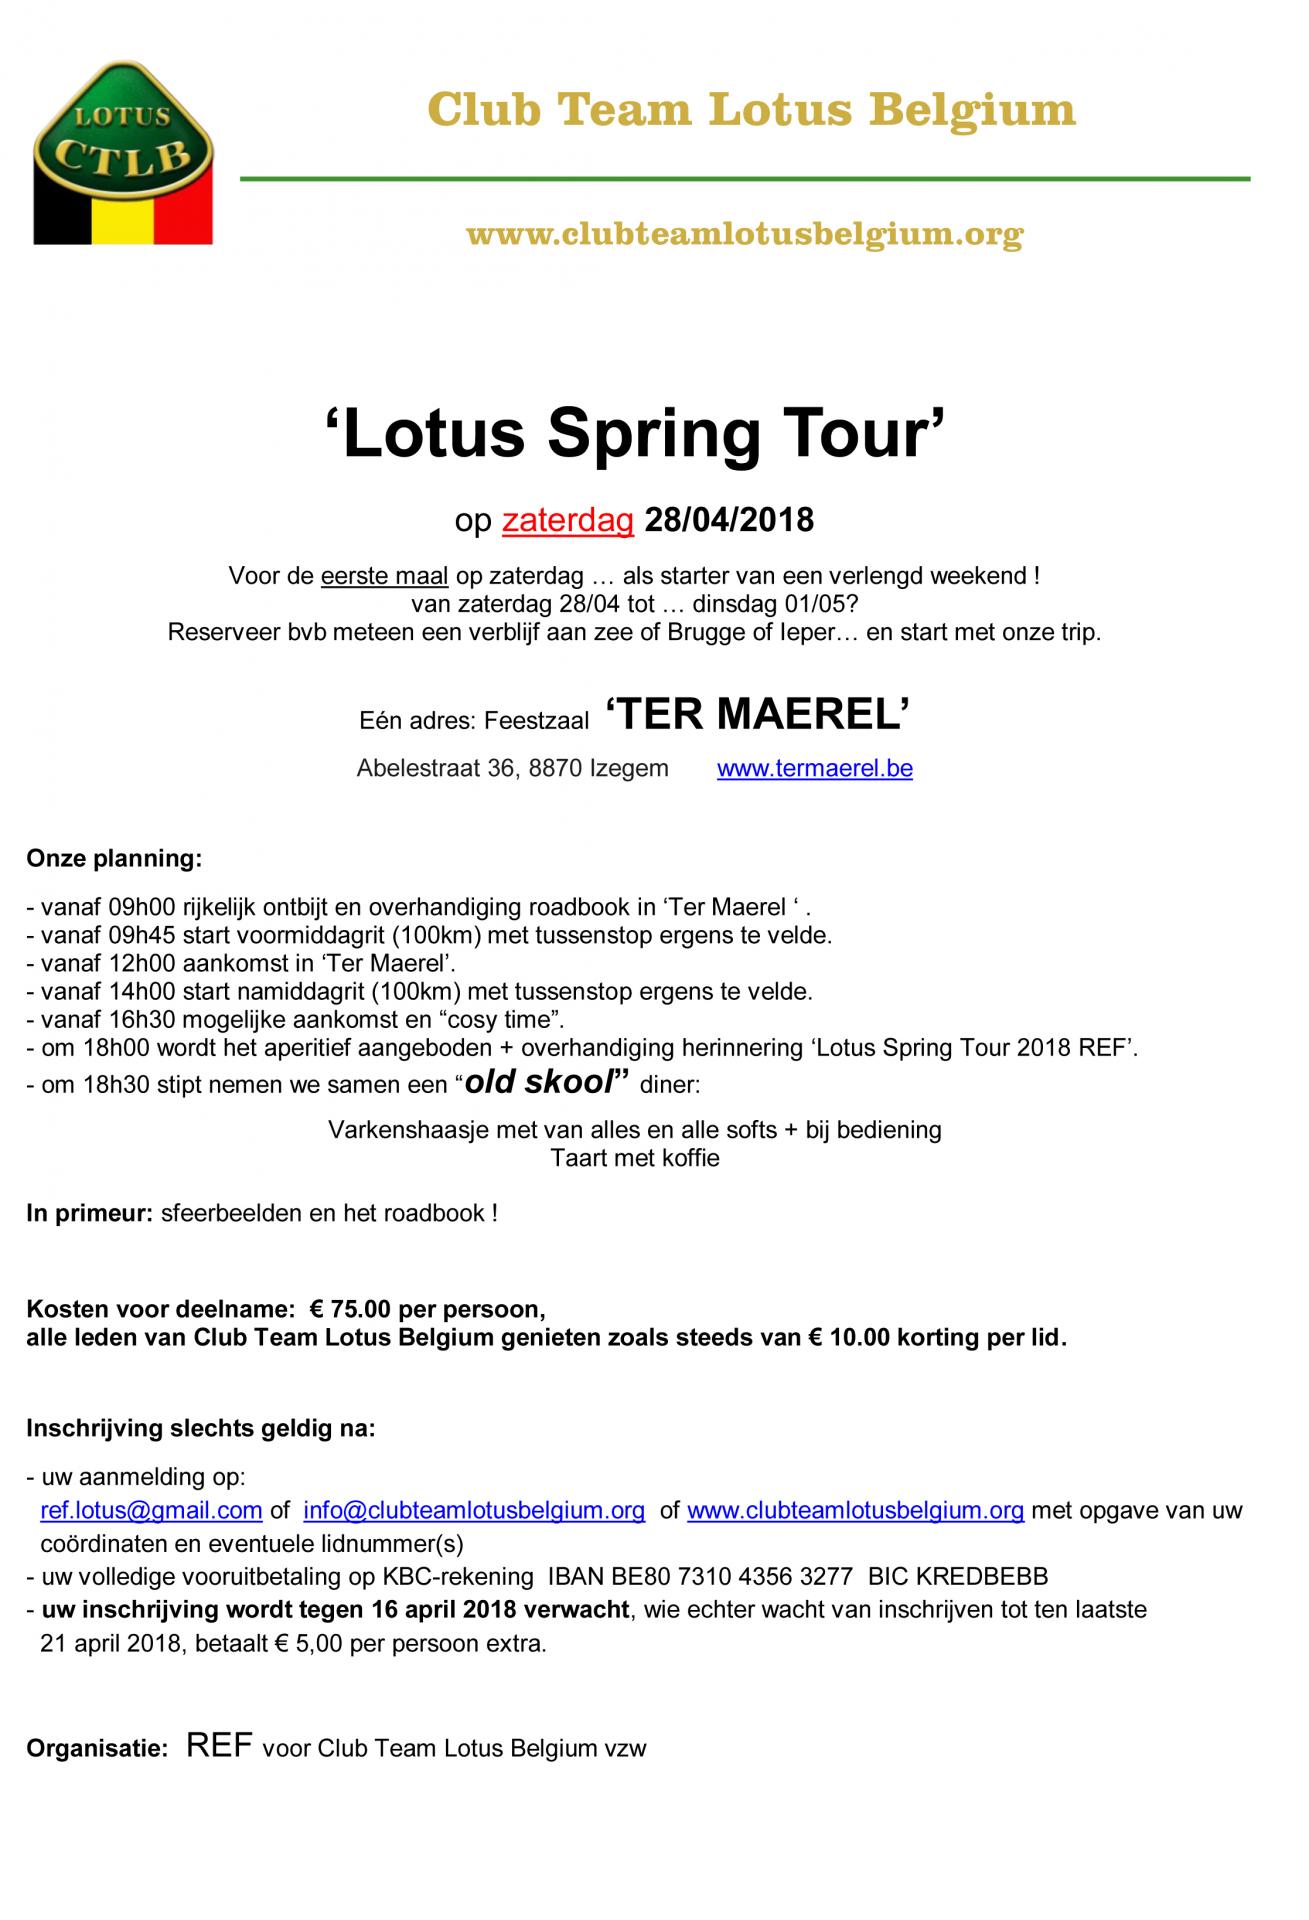 Lotus spring tour 2018 uitnodiging